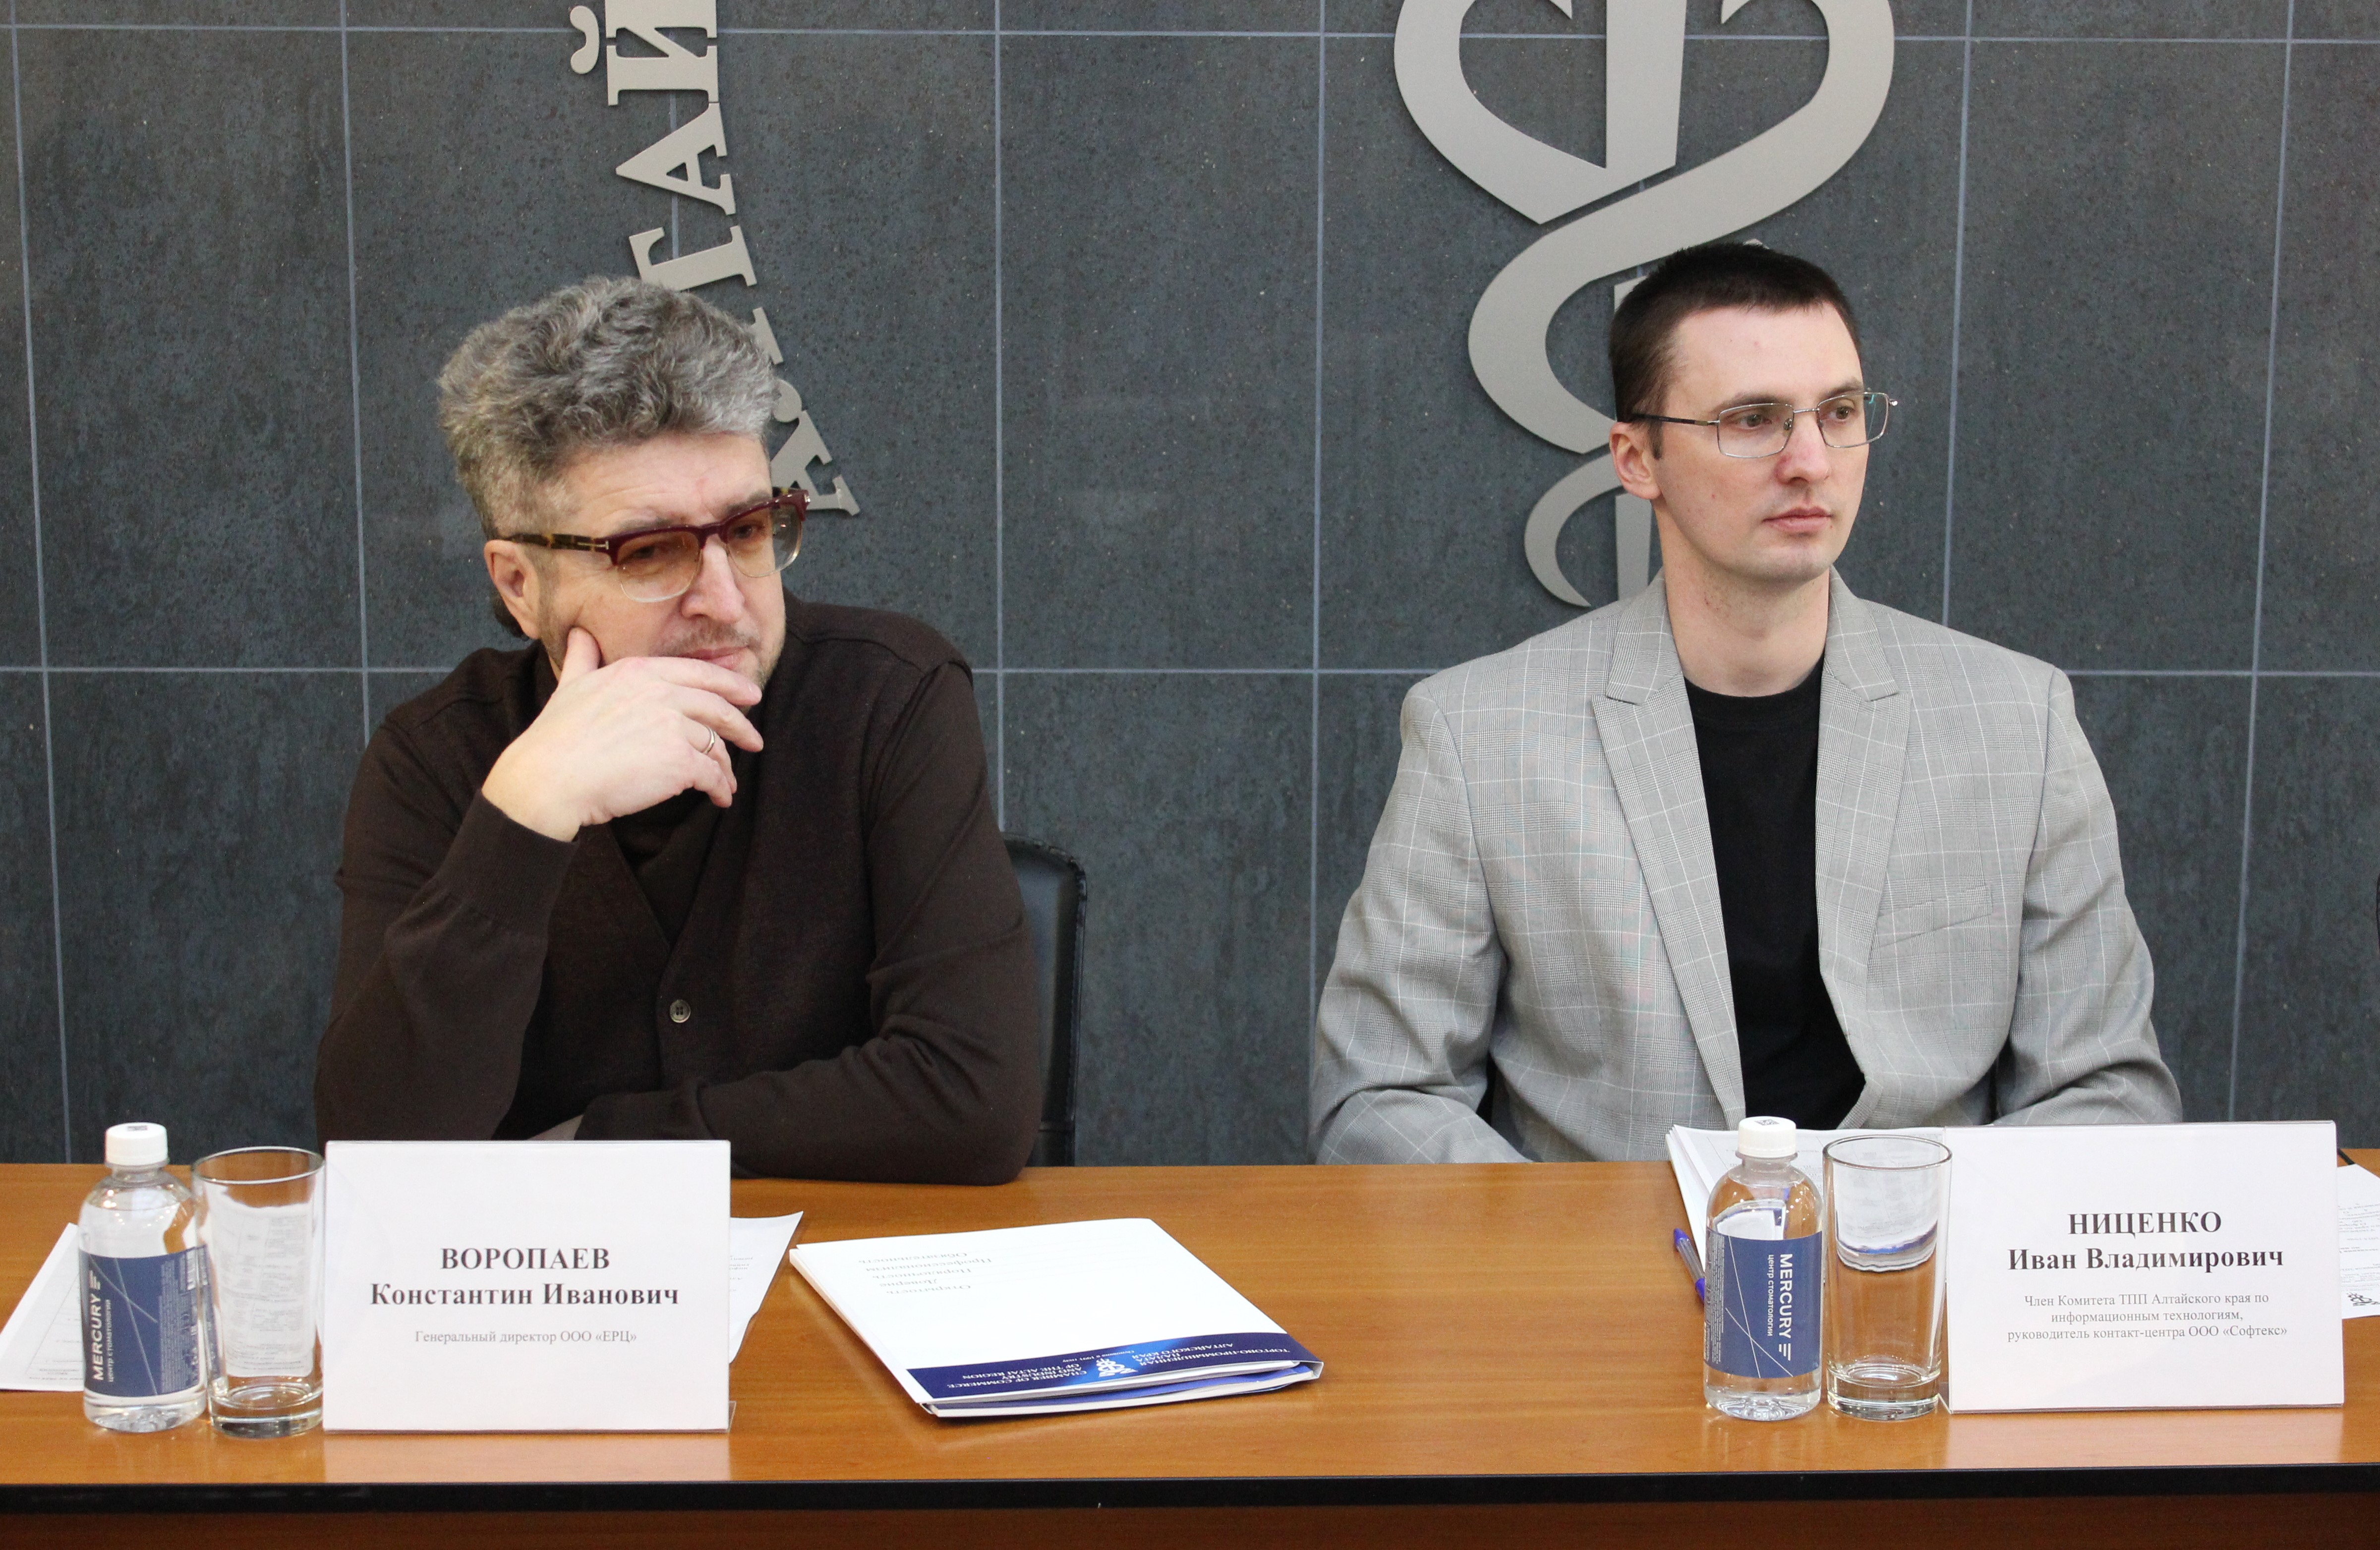 Константин Воропаев, генеральный директор ООО «ЕРЦ» и Иван Ниценко, руководитель контакт-центра ООО «Софтекс»